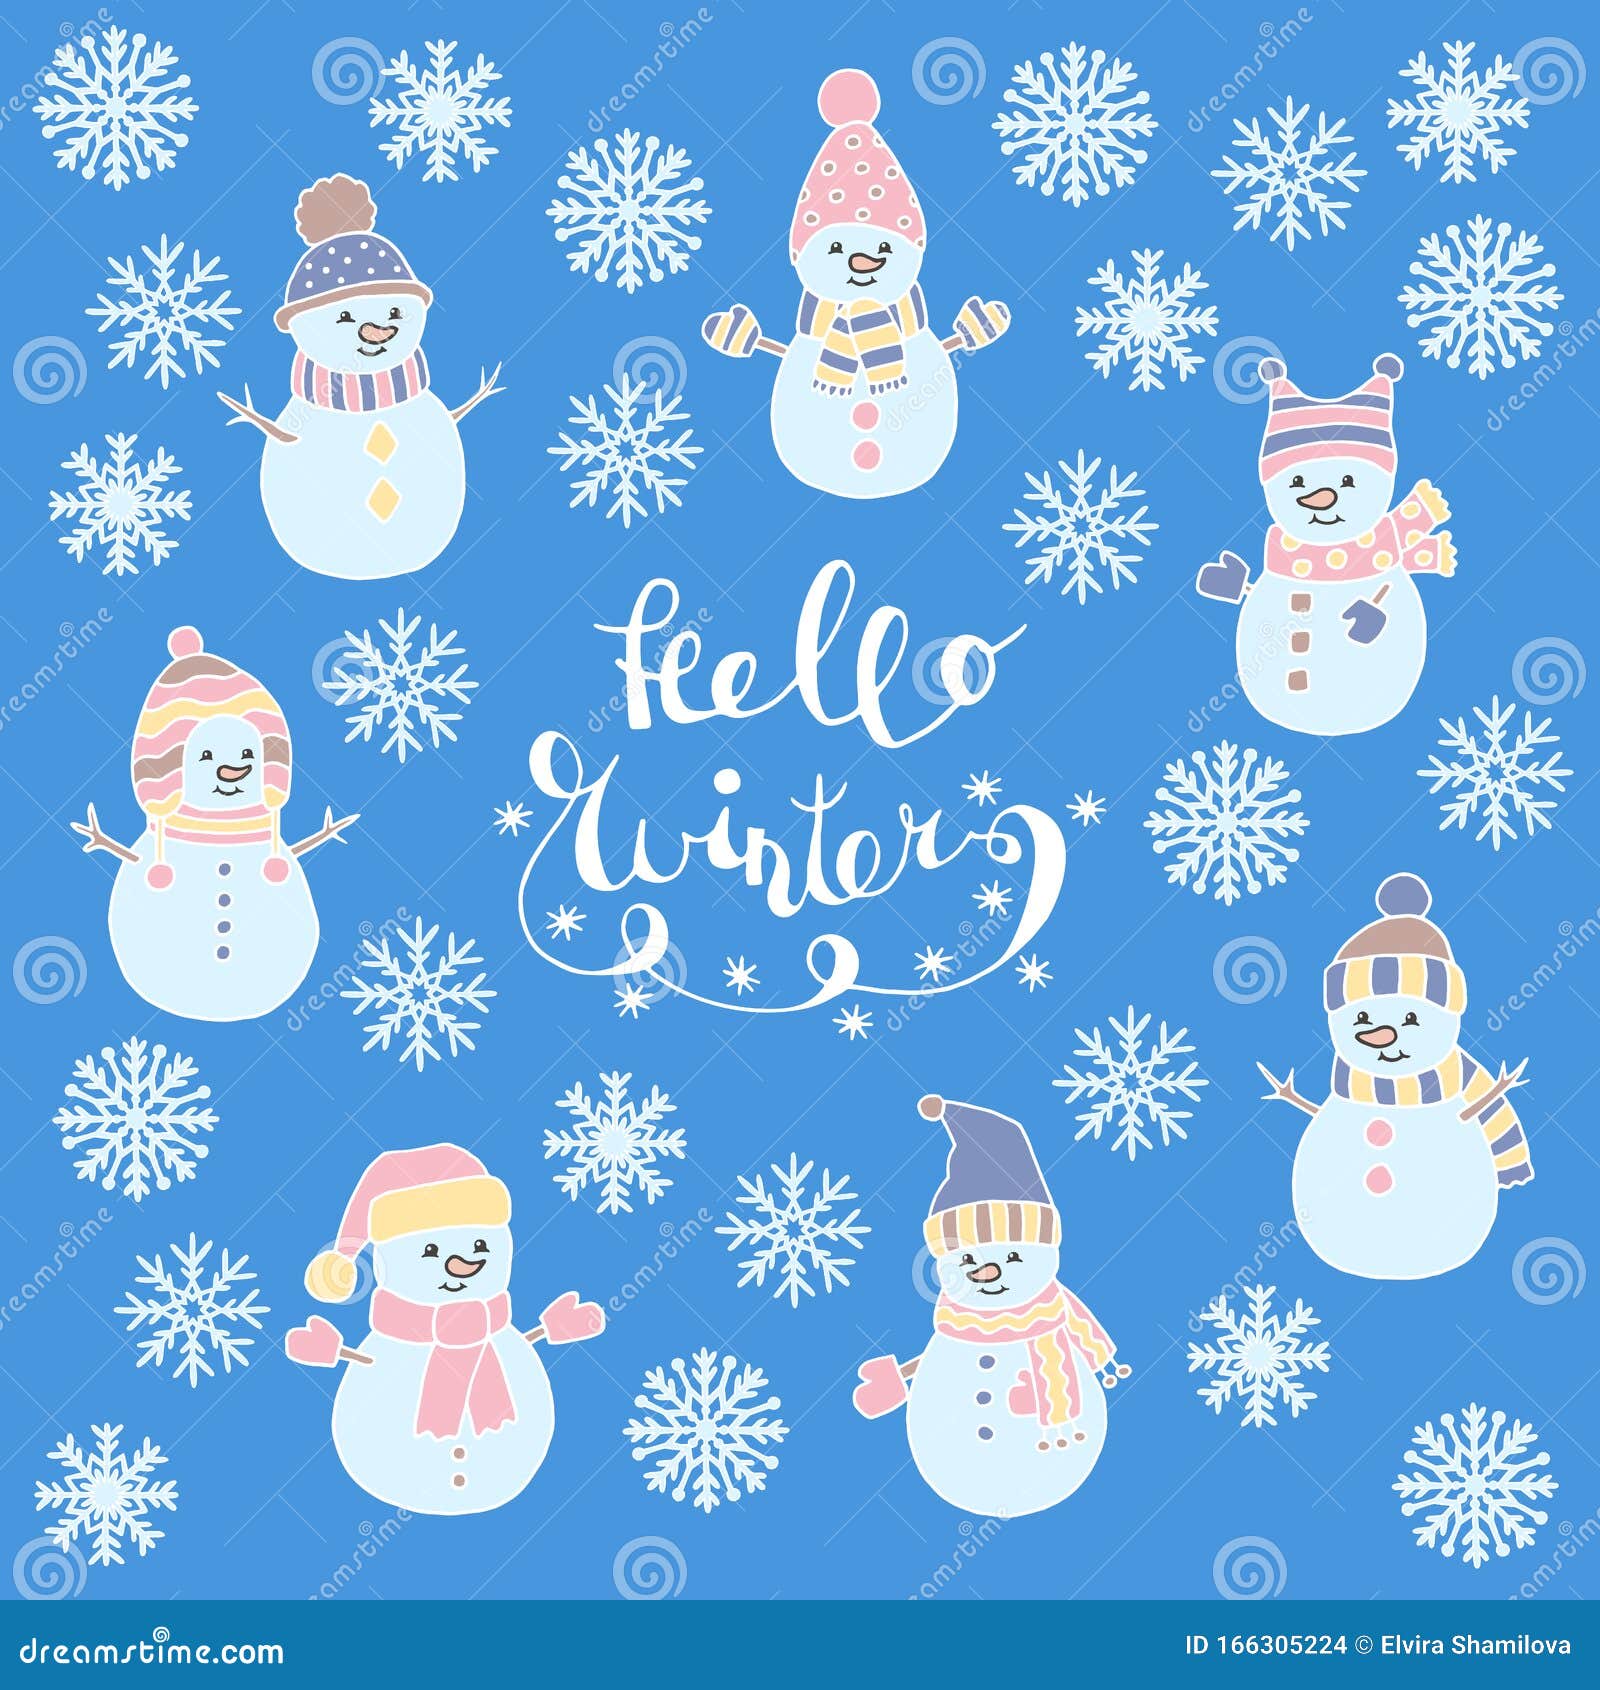 Imagen Vectorial De Invierno De Navidad Con Hombres De Nieve Y Copos De  Nieve Stock de ilustración - Ilustración de nieve, extracto: 166305224